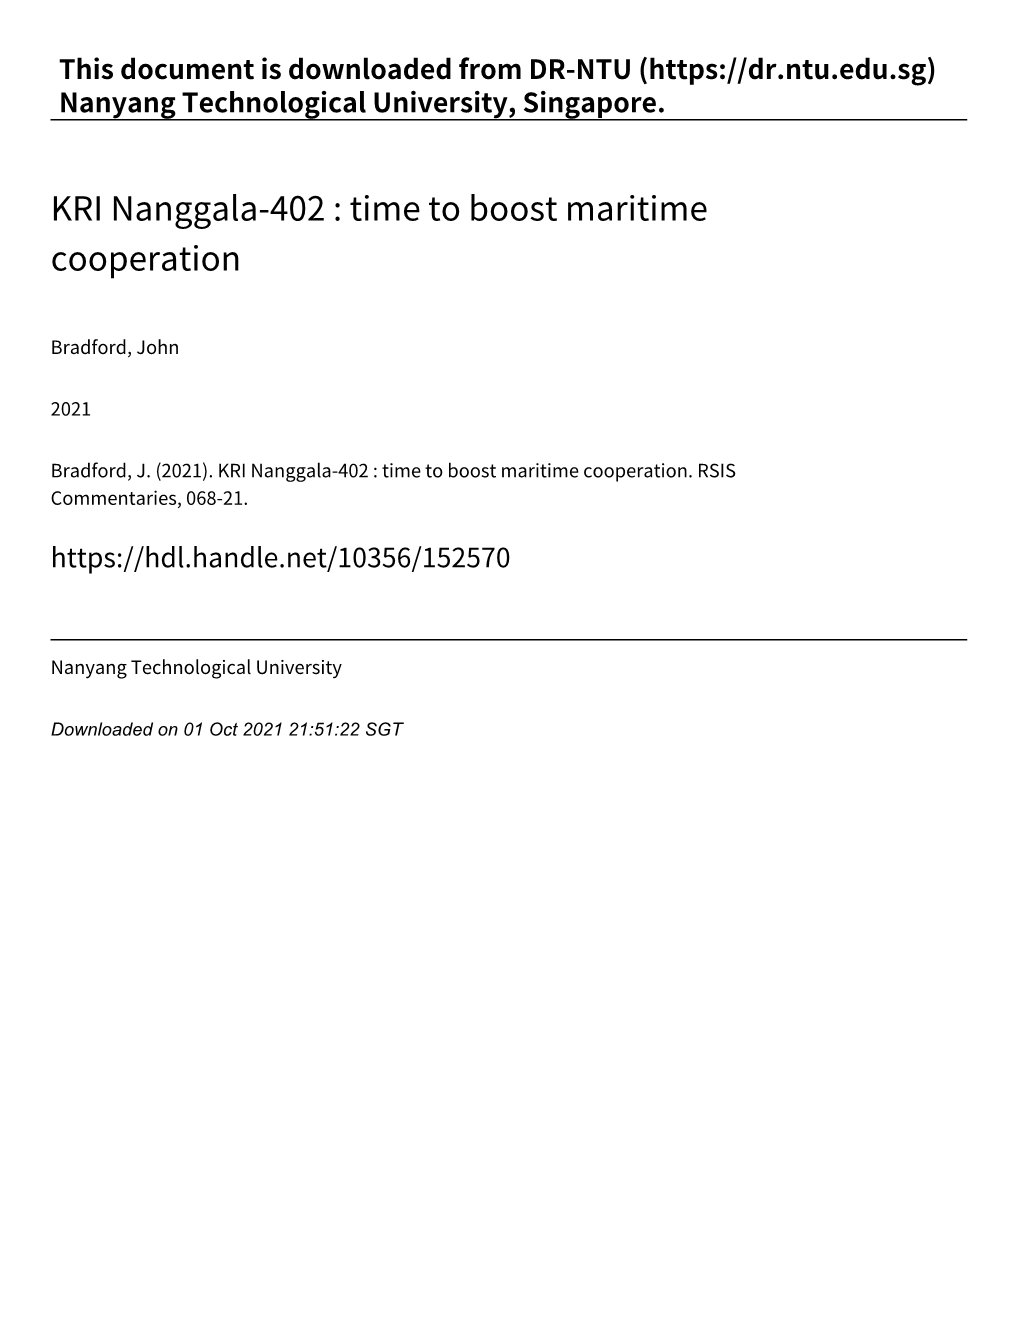 KRI Nanggala‑402 : Time to Boost Maritime Cooperation